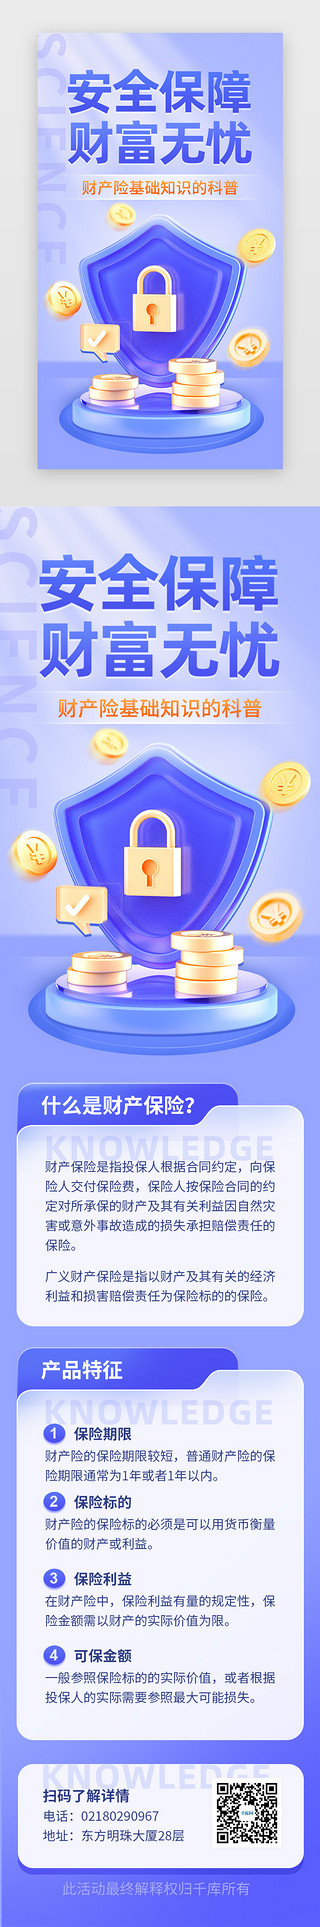 科普黑板报UI设计素材_财产保险知识科普app主界面立体蓝紫盾牌